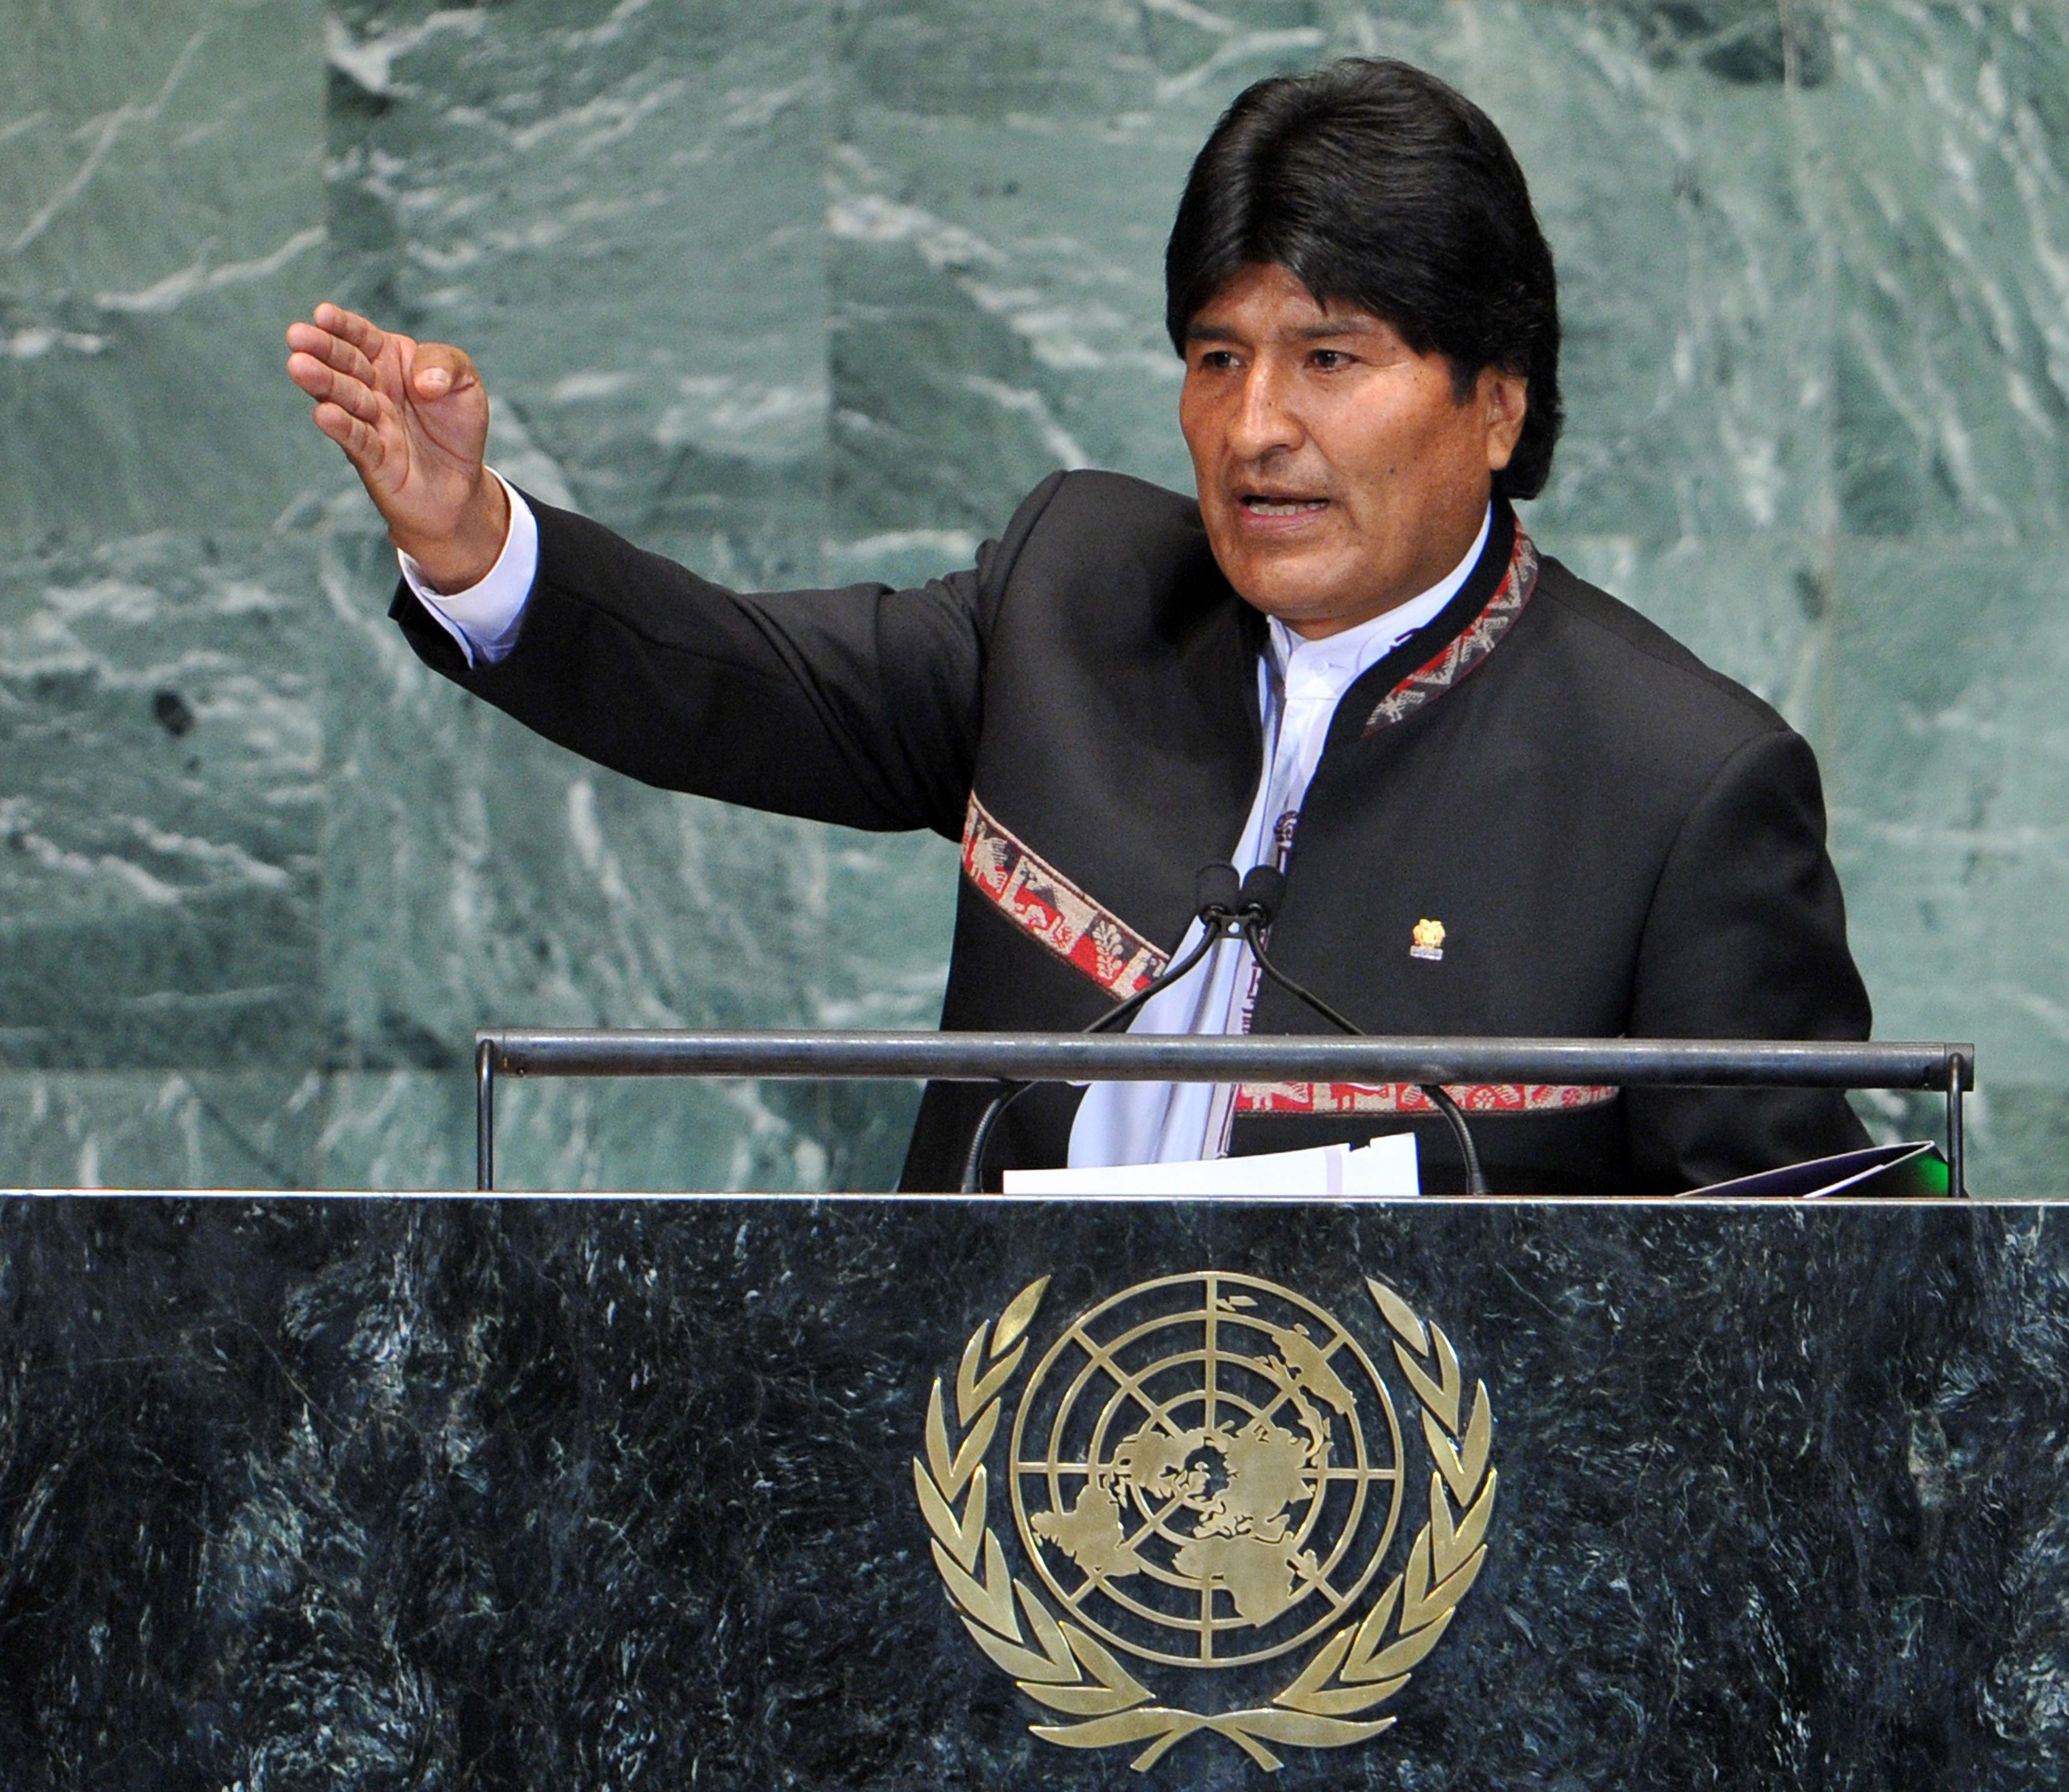 bolivian president evo morales at the UN